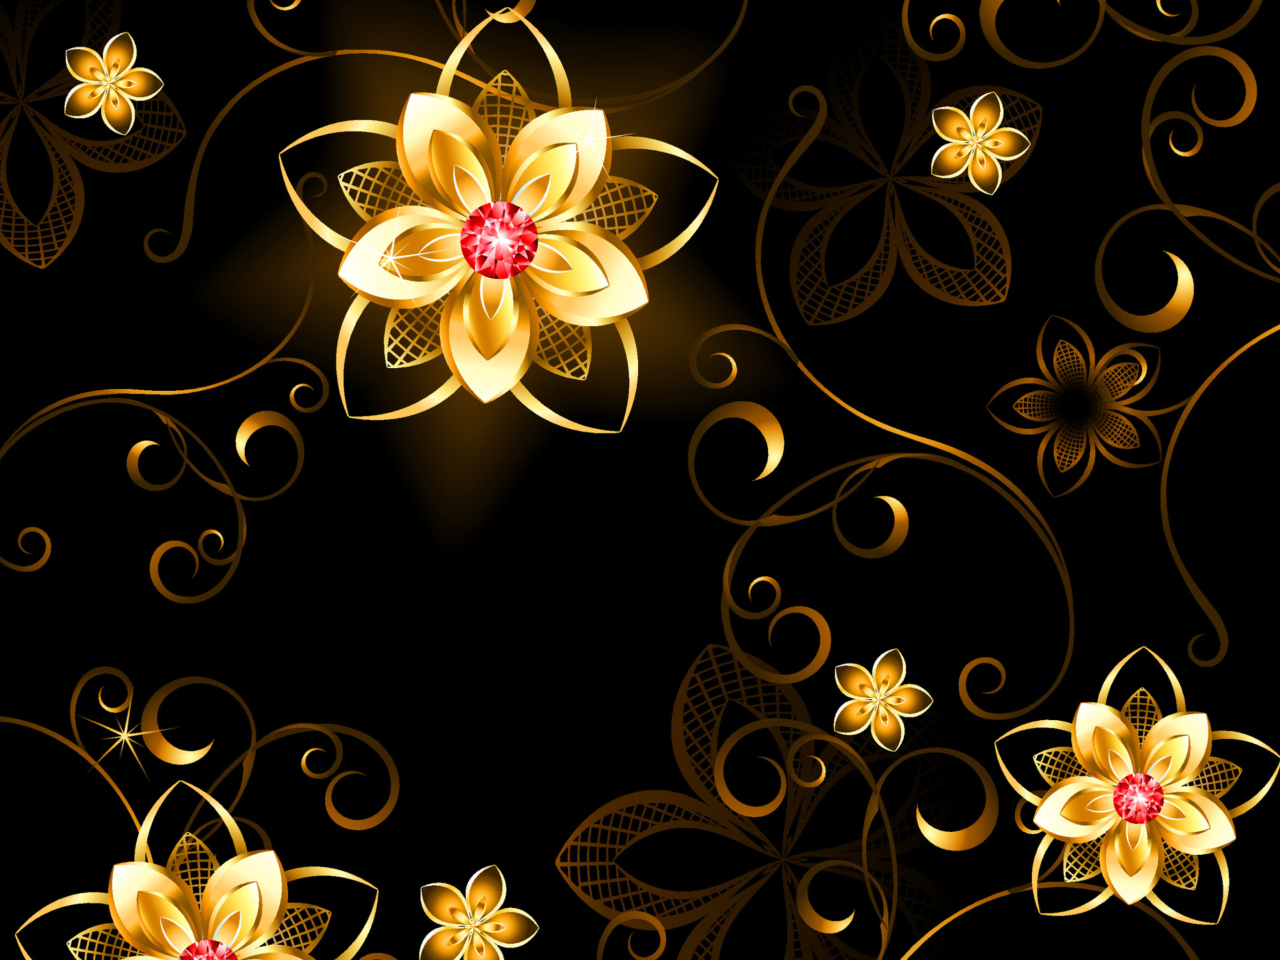 Das Golden Flowers Wallpaper 1280x960